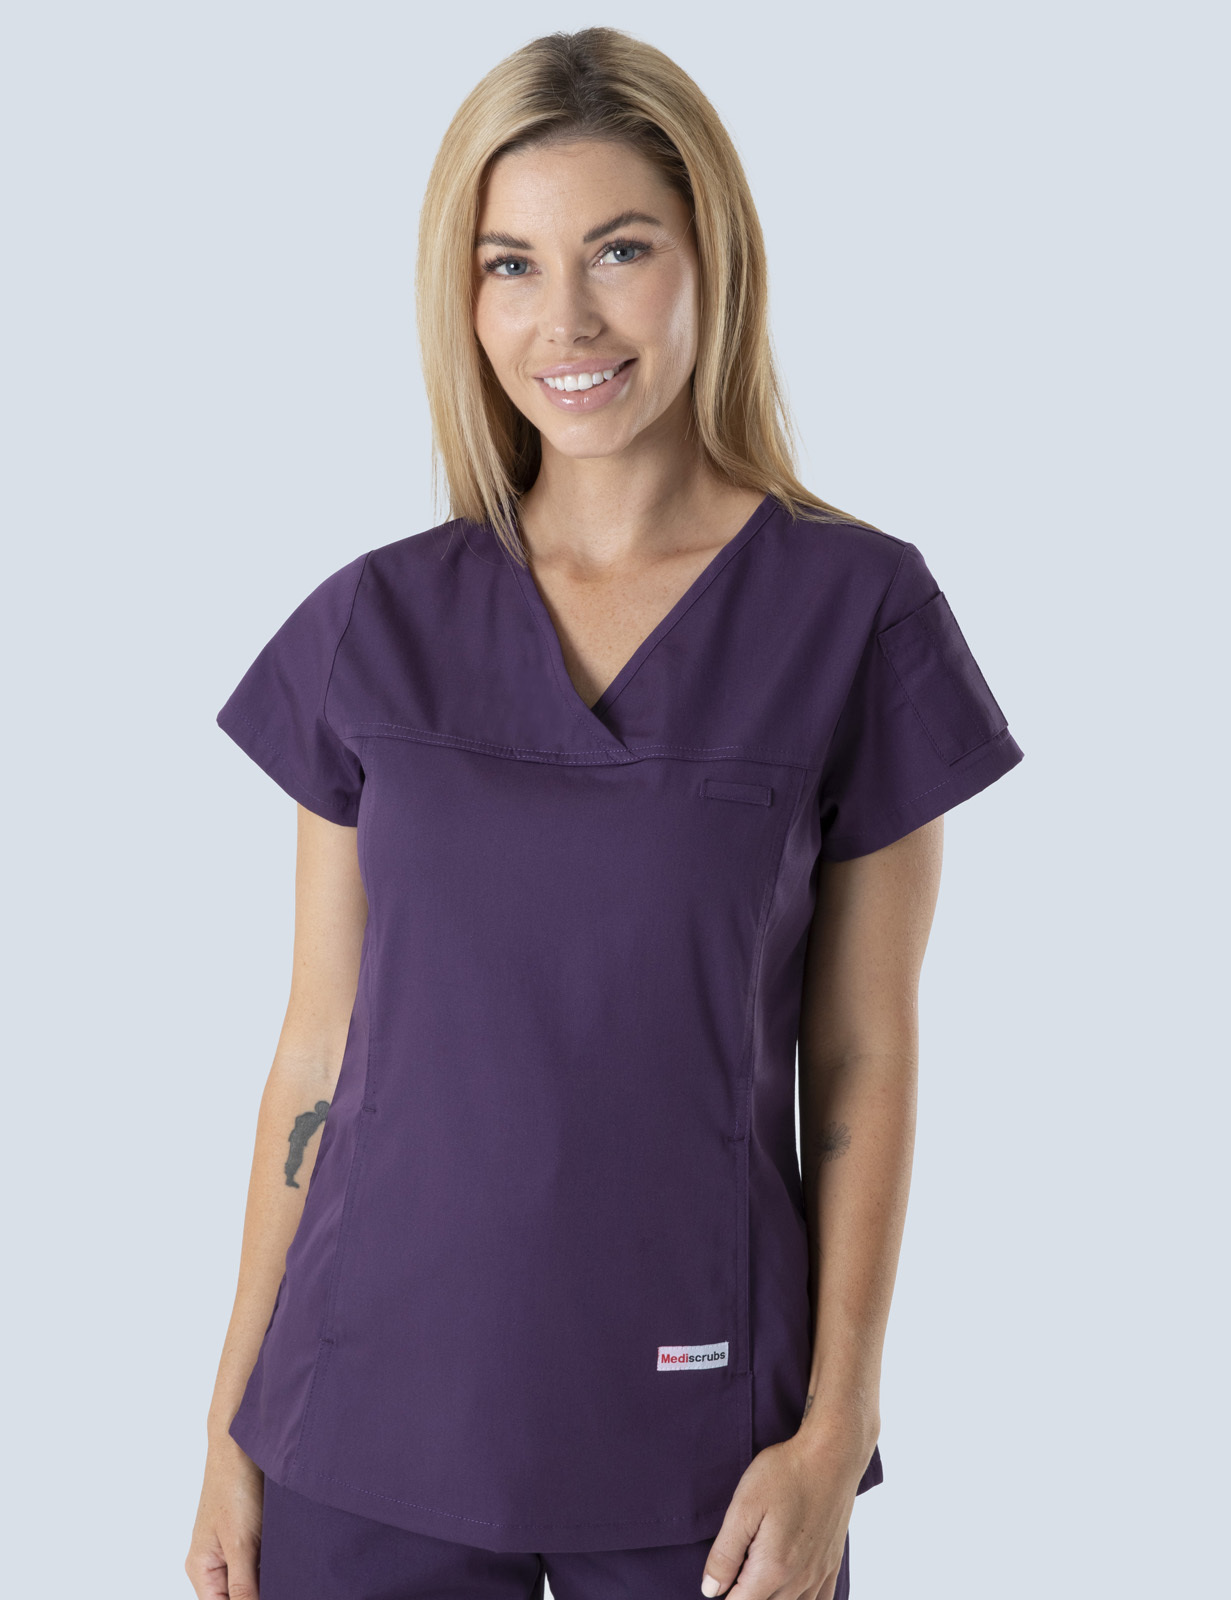 Queensland Children's Hospital Emergency Department Nurse Practitioner Uniform Top Bundle  (Women's Fit Top in Aubergine  incl Logos)